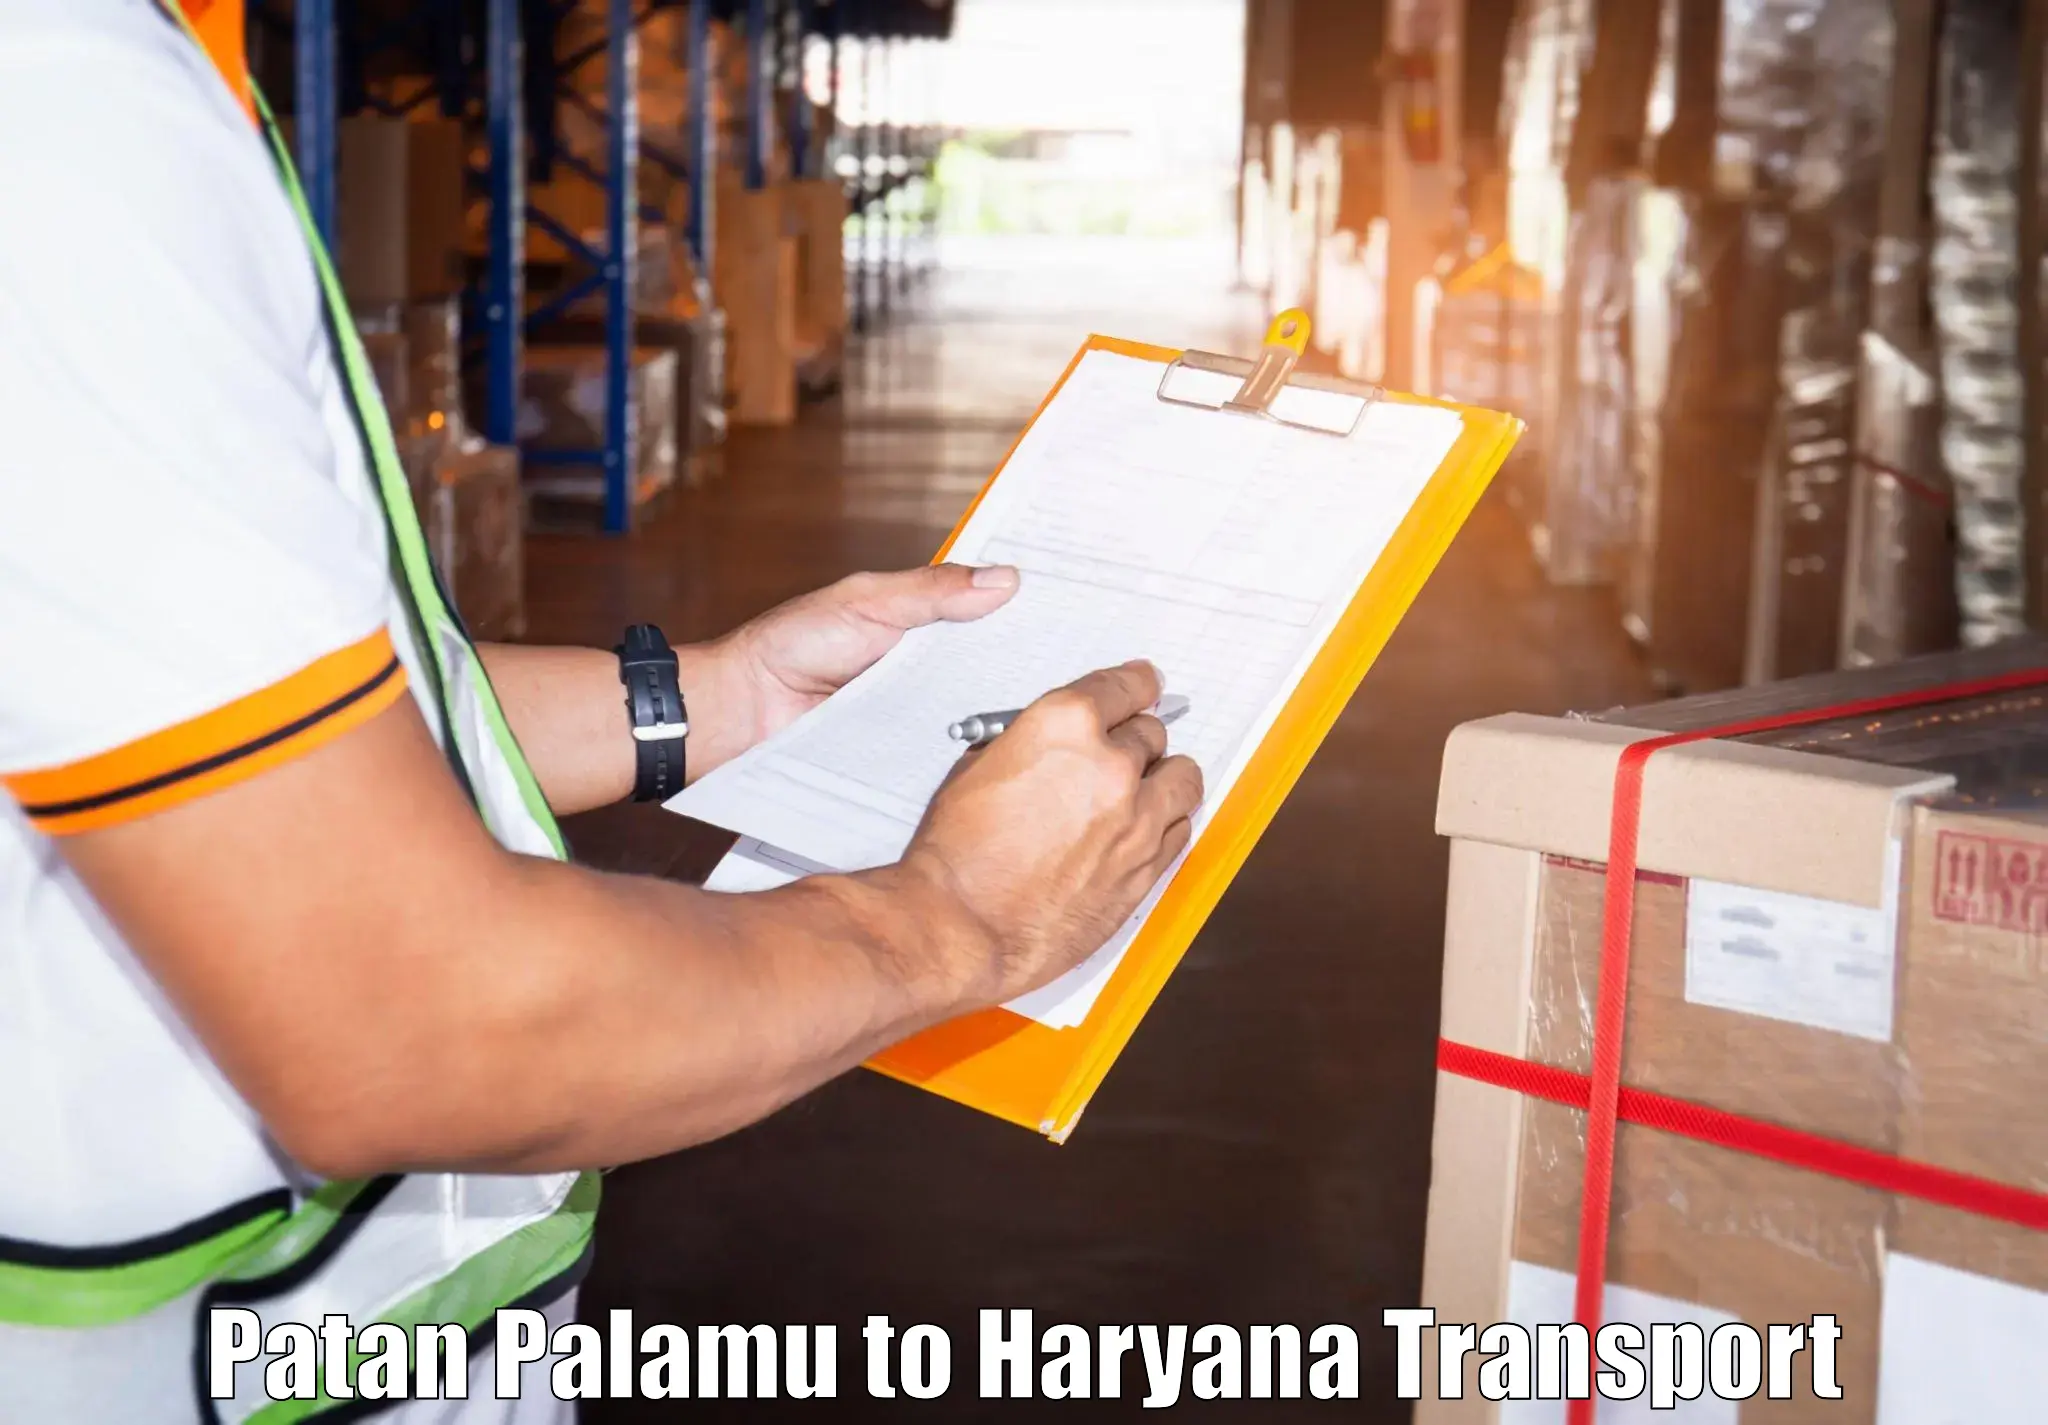 Online transport booking Patan Palamu to Kalanwali